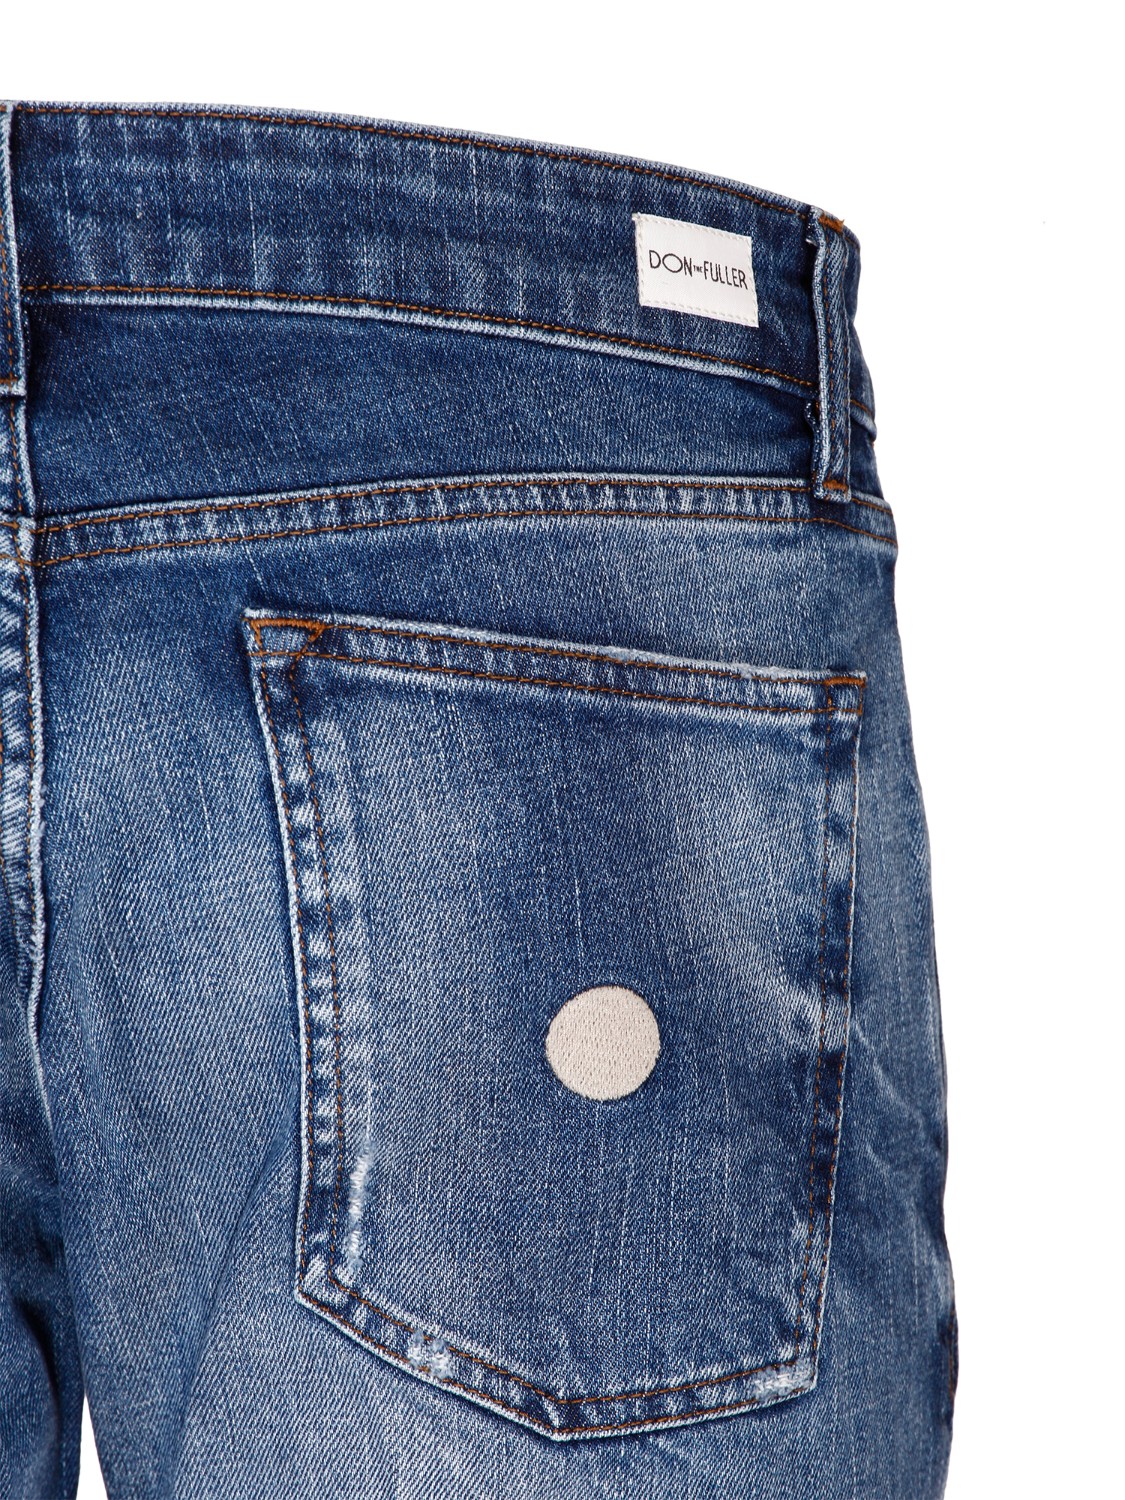 shop DON THE FULLER Saldi Jeans: Don The Fuller jeans "Milano" in cotone stretch.
Vita regolare.
Modello cinque tasche.
Chiusura con bottoni.
Lunghezza alla caviglia.
Vestibilità slim.
Composizione: 98% cotone 2% elastan.
Made in Italy.. MILANO DTFUT SS721-D number 1636973